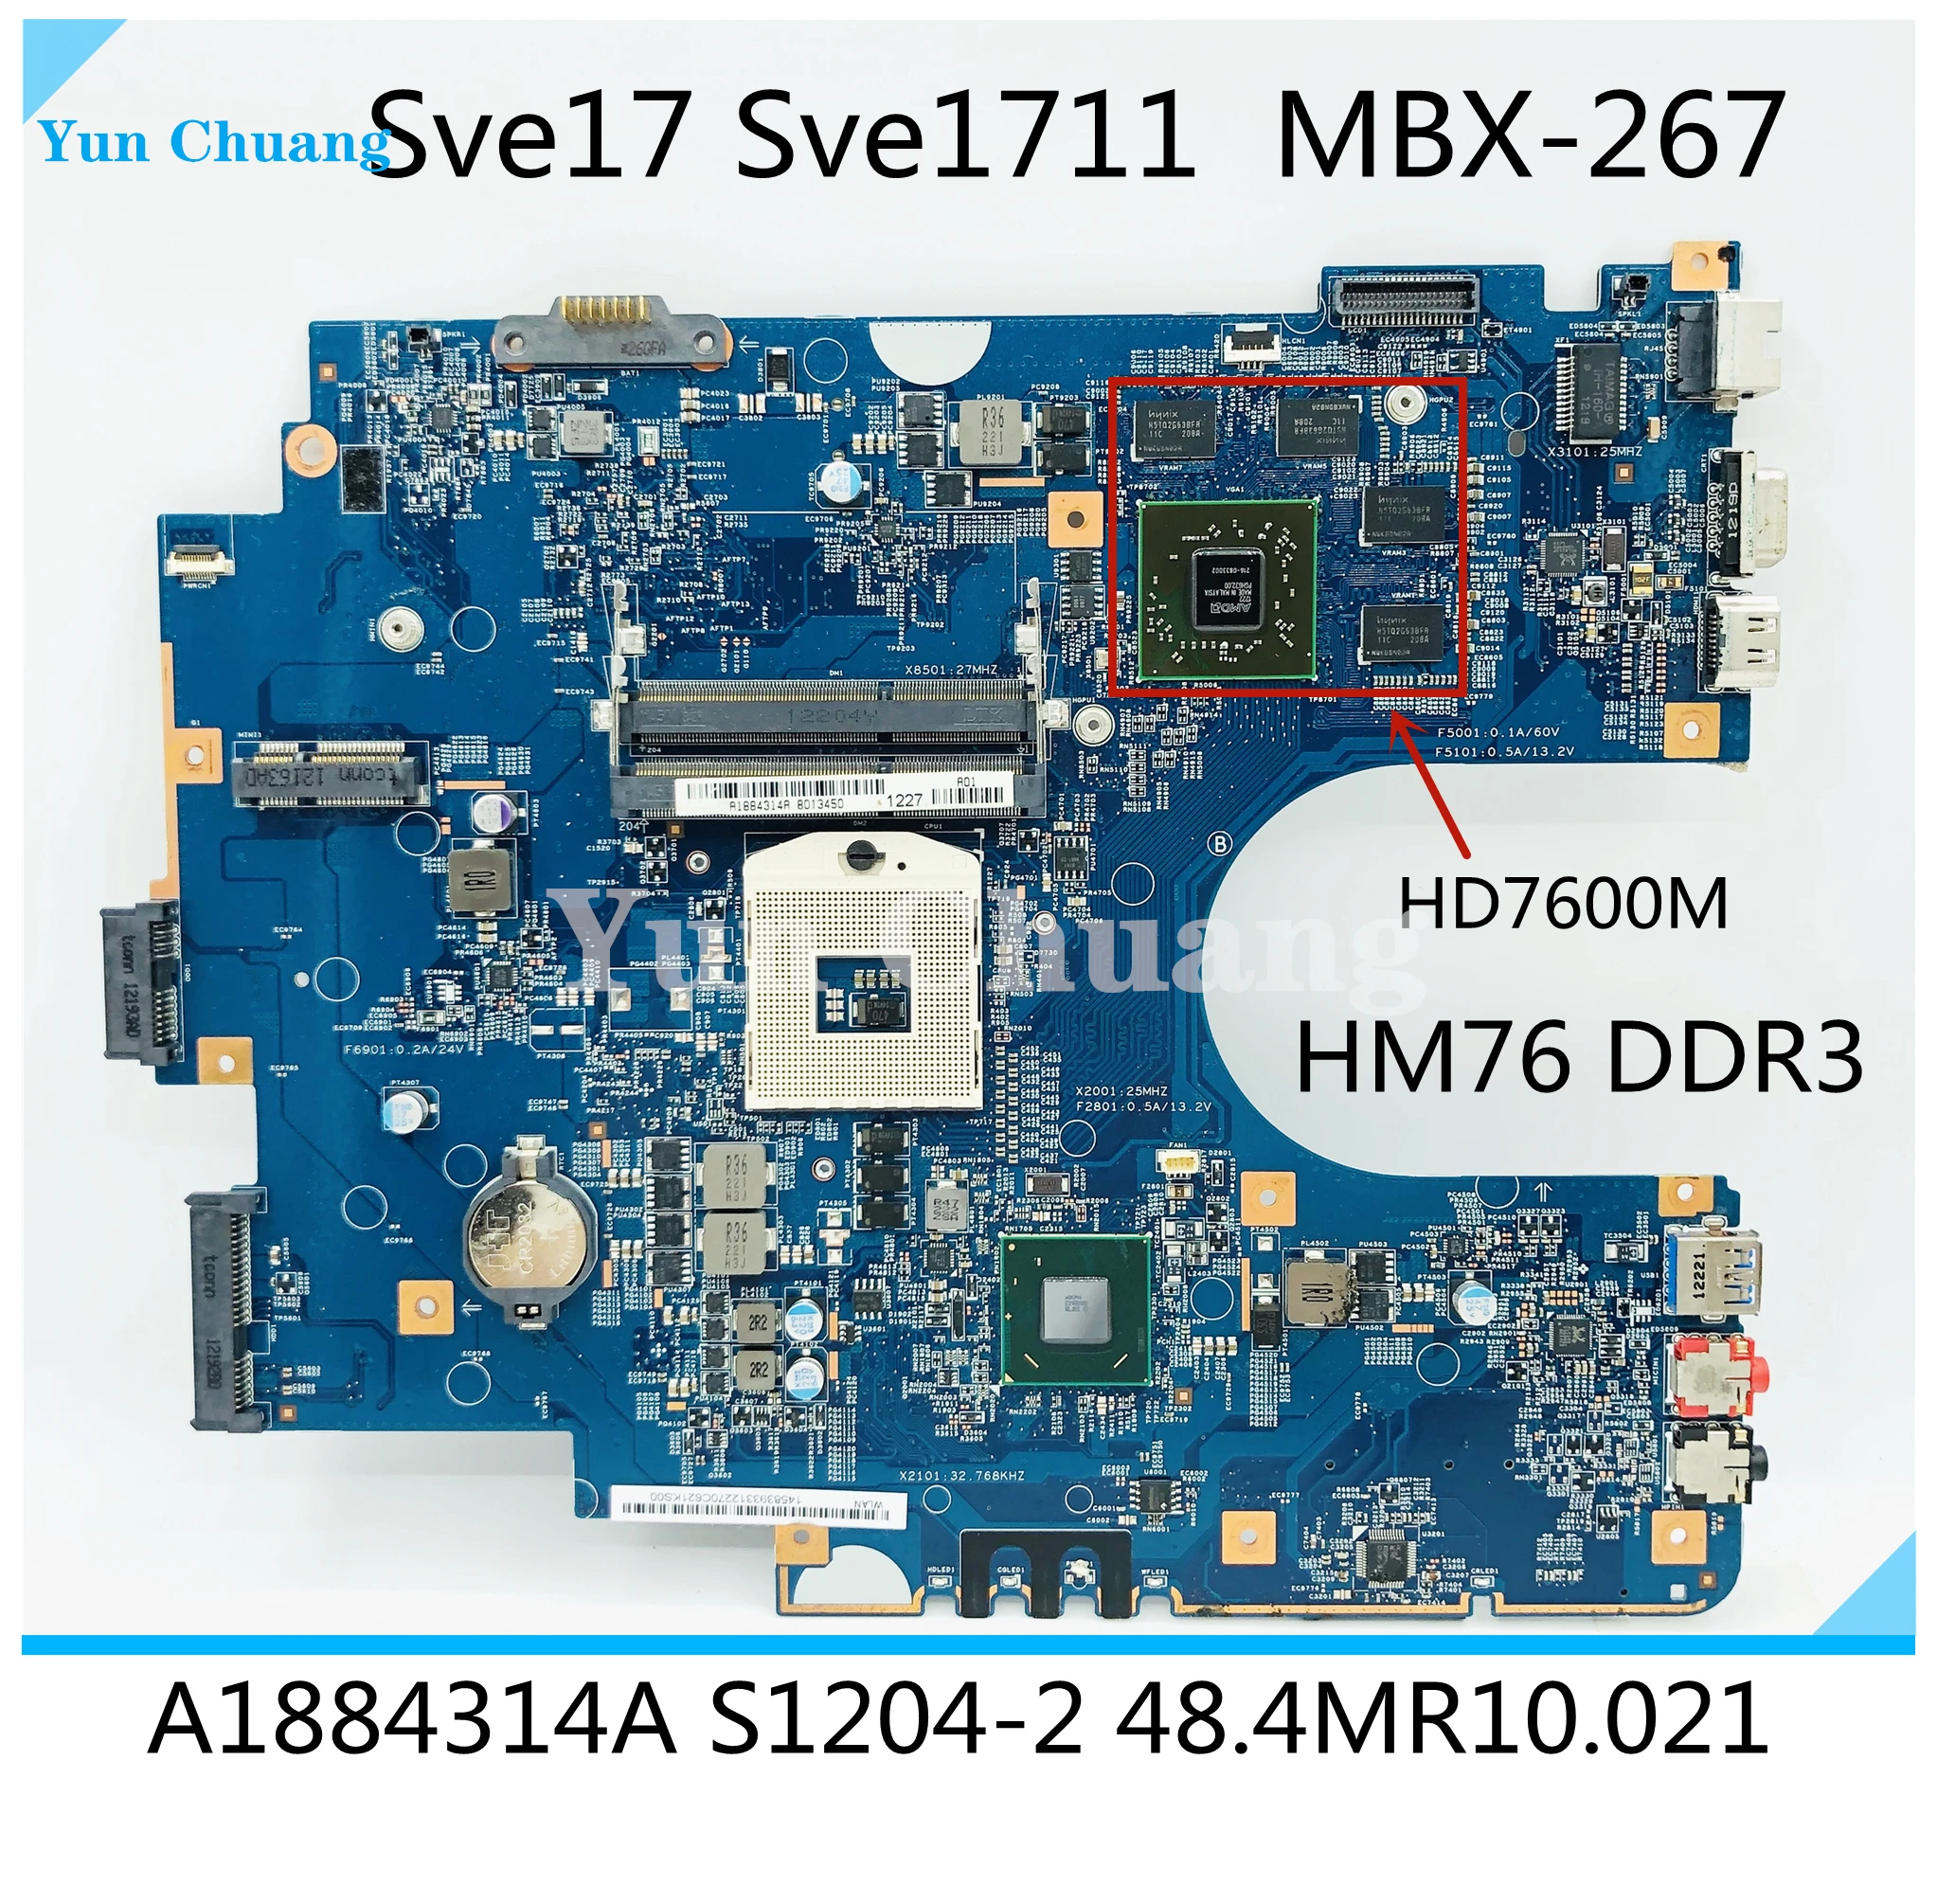 Фото A1884314A для Sony Sve17 Sve1711 SVE171A Материнская плата ноутбука MBX-267 HM76 DDR3 HD7600M GPU A1892051A 48.4MR10.021